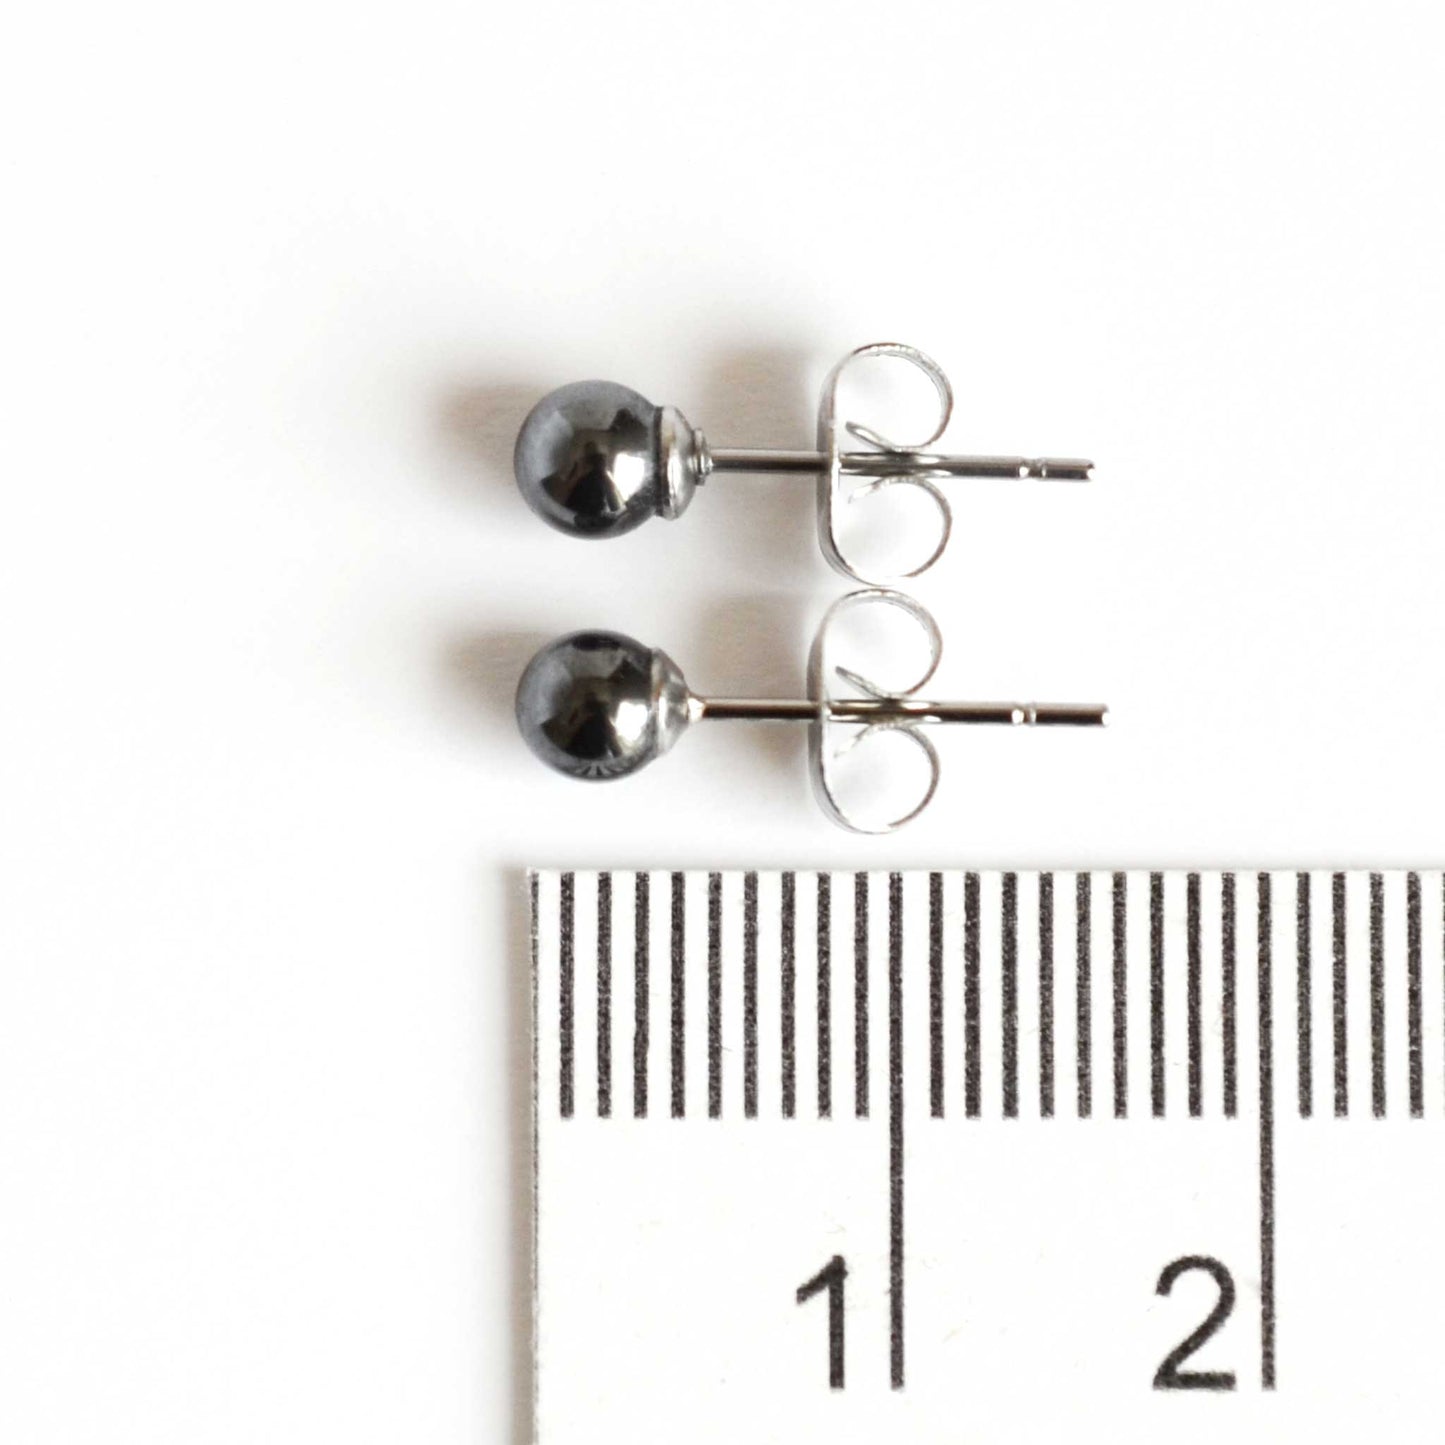 4mm Hematite earrings next to ruler